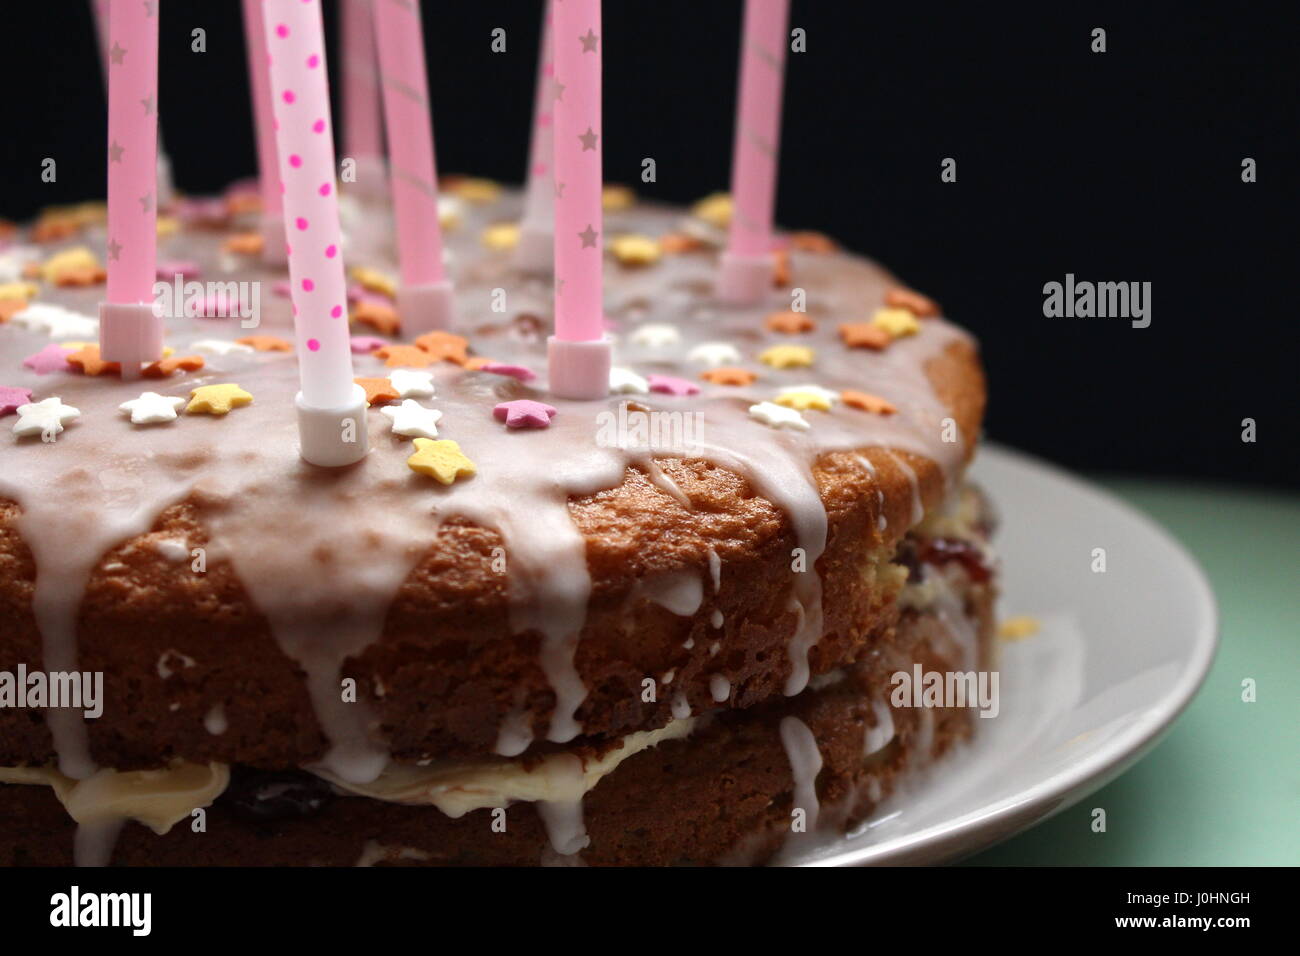 Compleanno victoria sponge cake con glassa che cola e rosa candele, con zucchero star decorazioni, contro uno sfondo nero Foto Stock